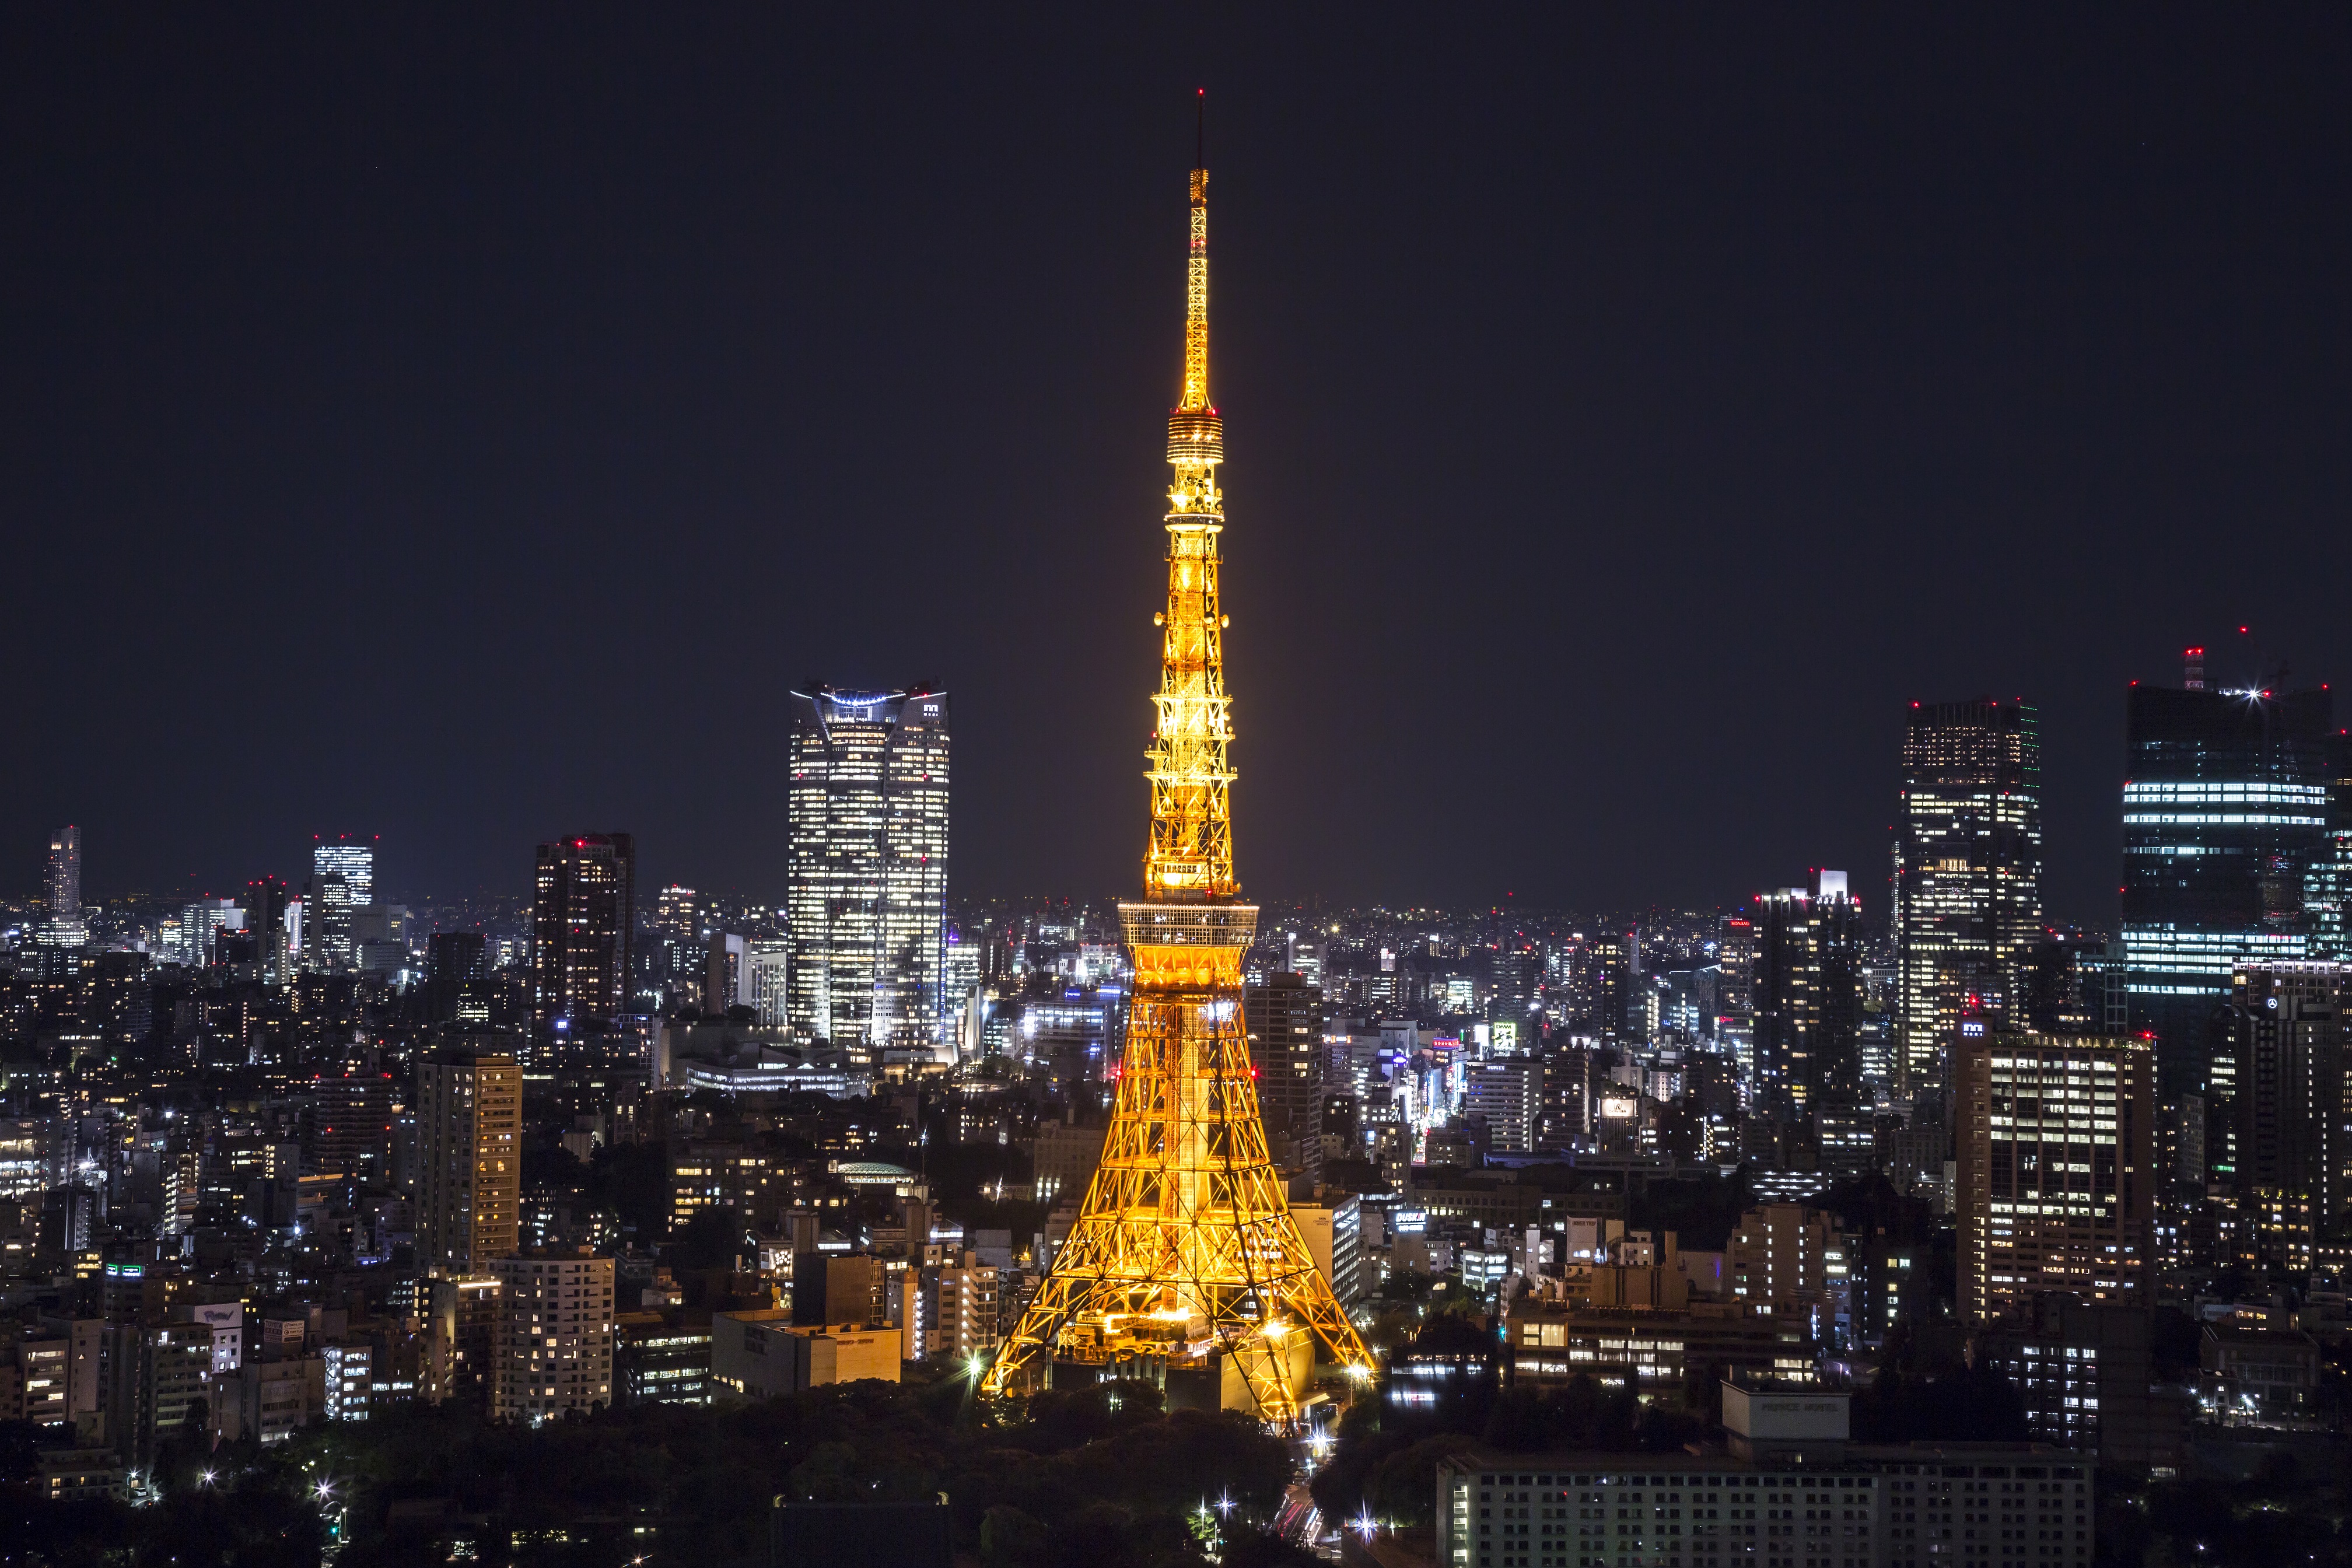 東京タワーメインデッキ(150m)入場券＋東京タワーバンジーVR体験